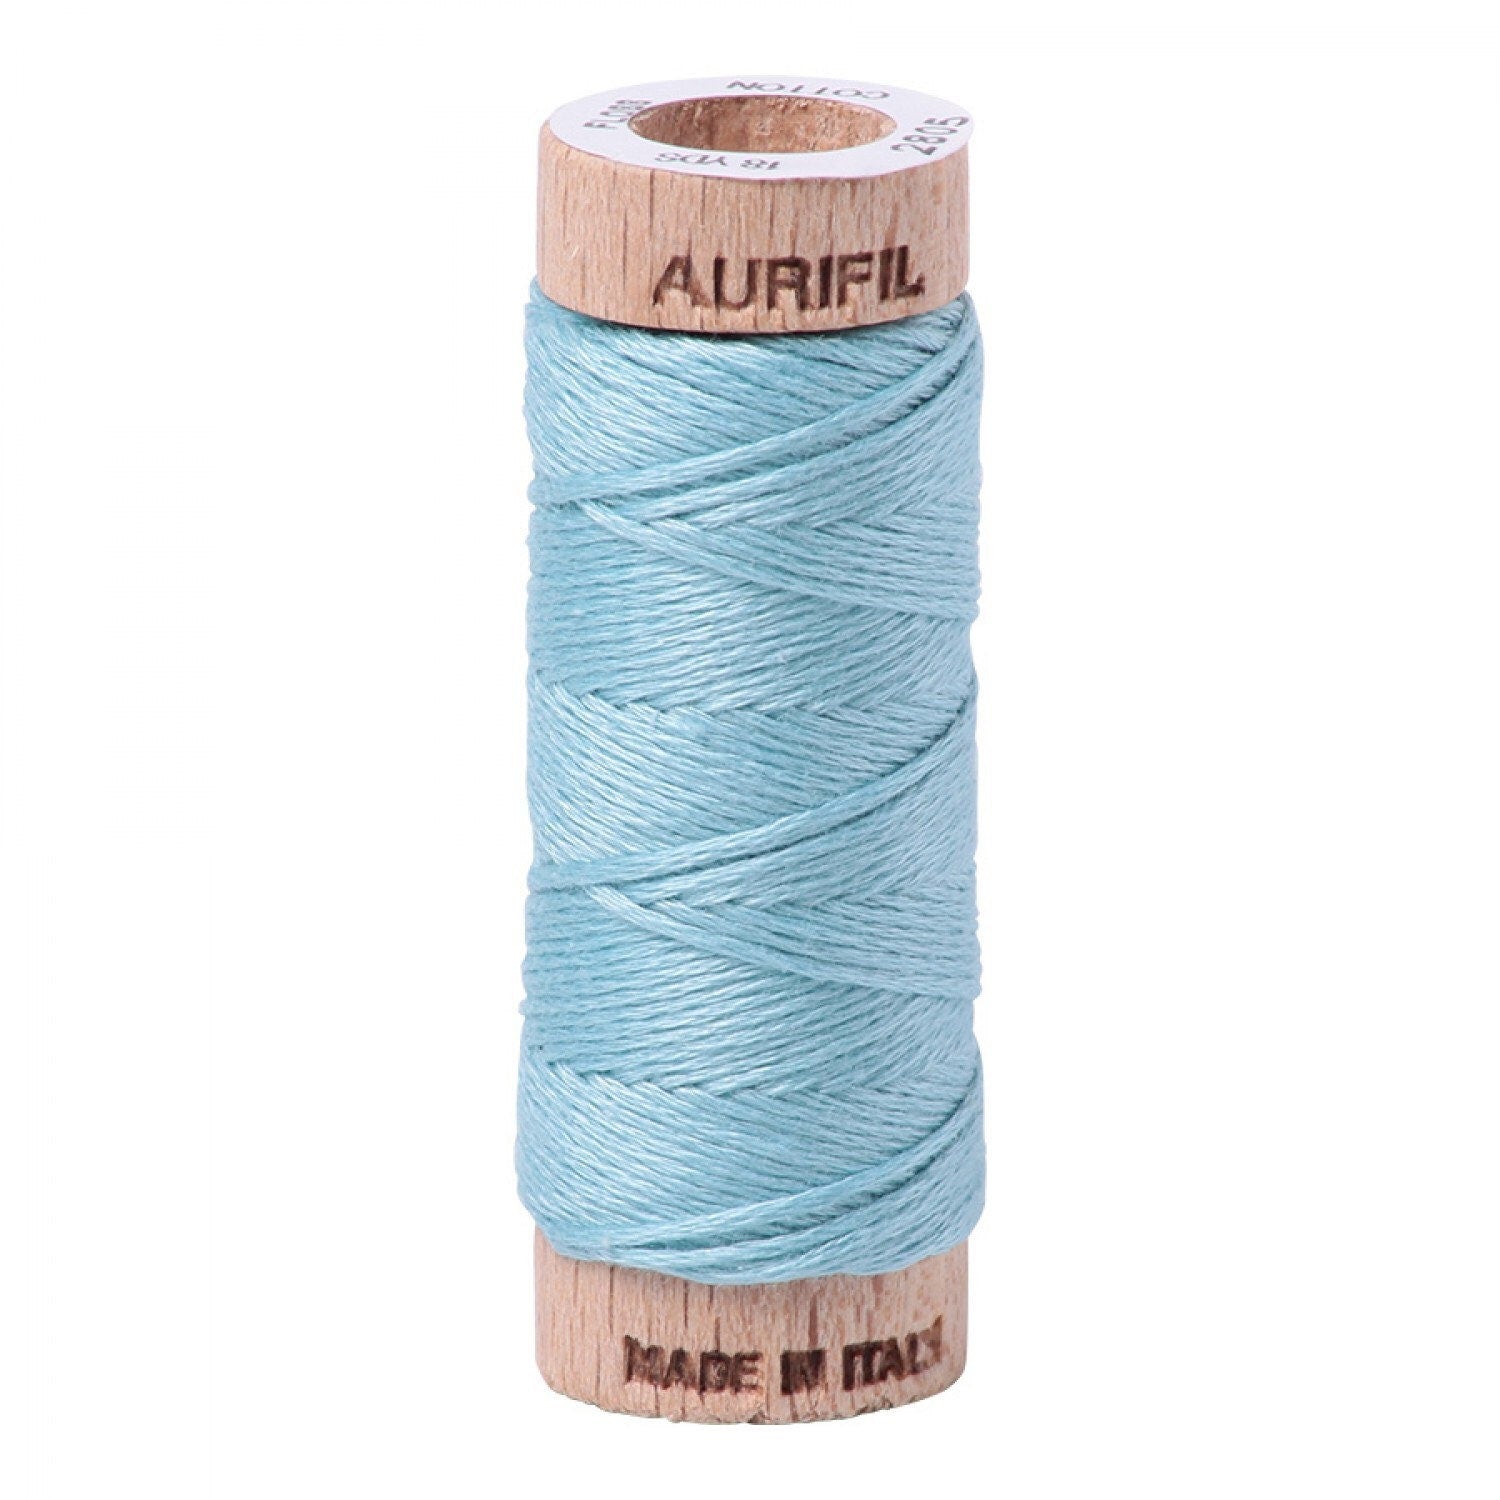 Light Turquoise Aurifil Floss - 2805 - Aurifloss